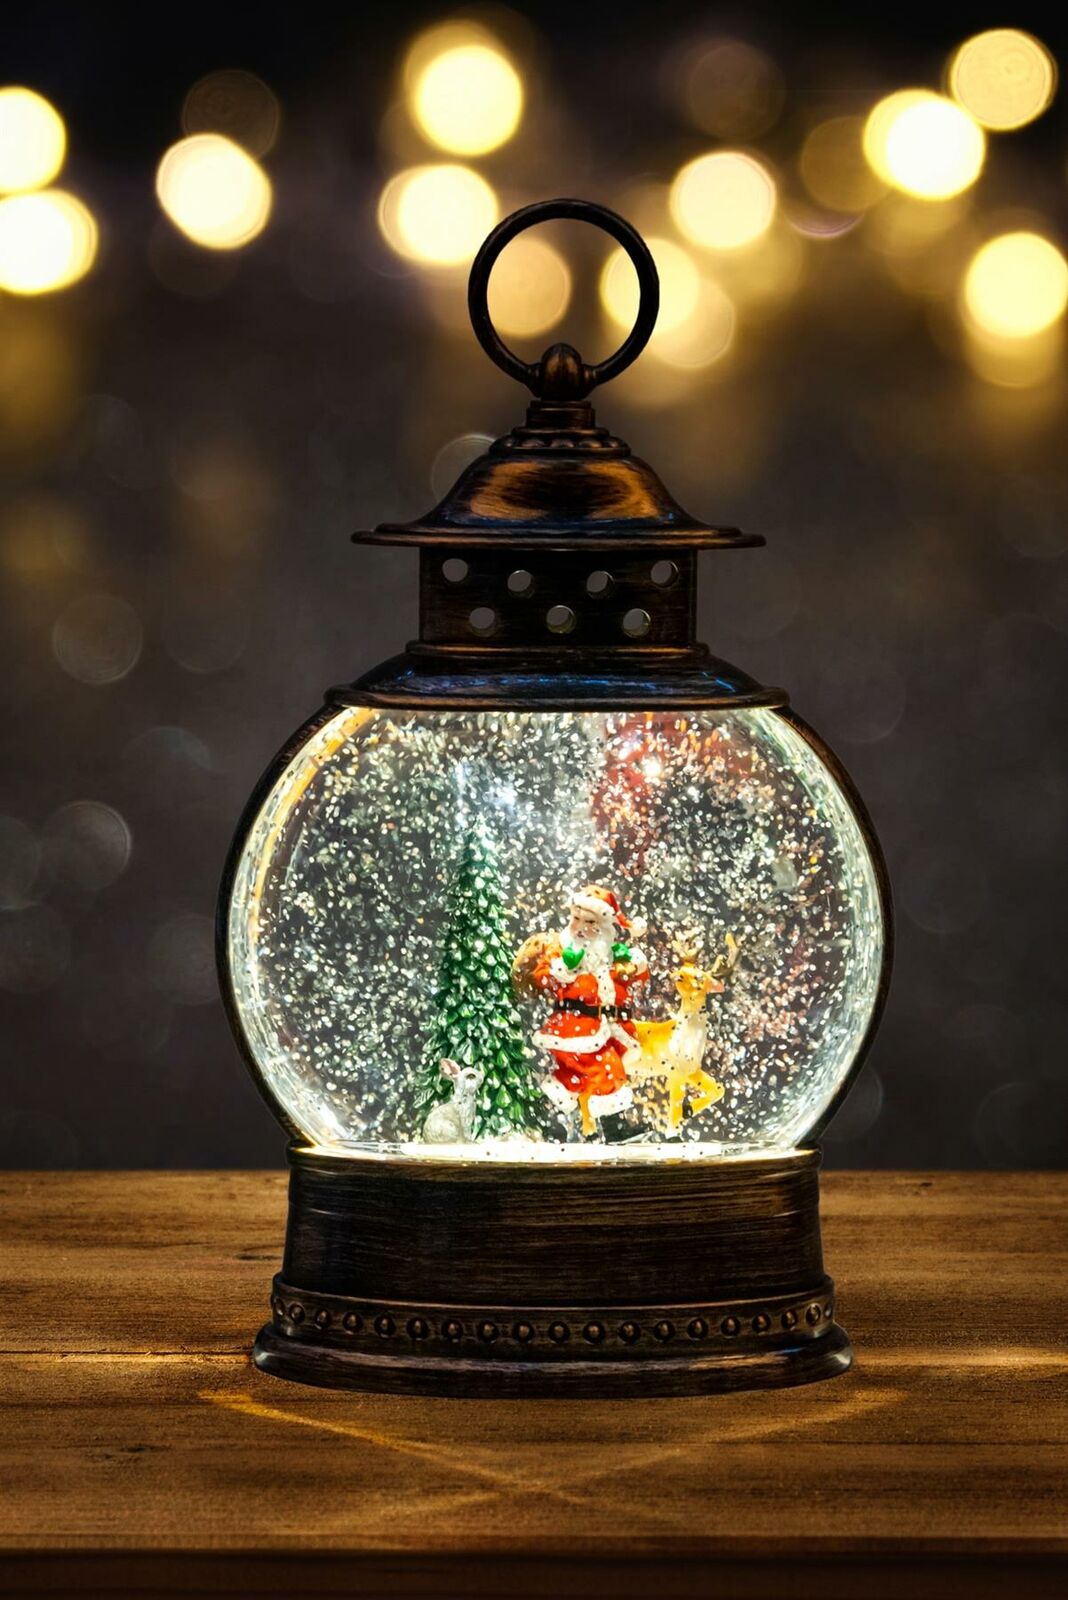 Óriás méretű zenélő és világító hógömb – felakasztható karácsonyi lámpás (7)